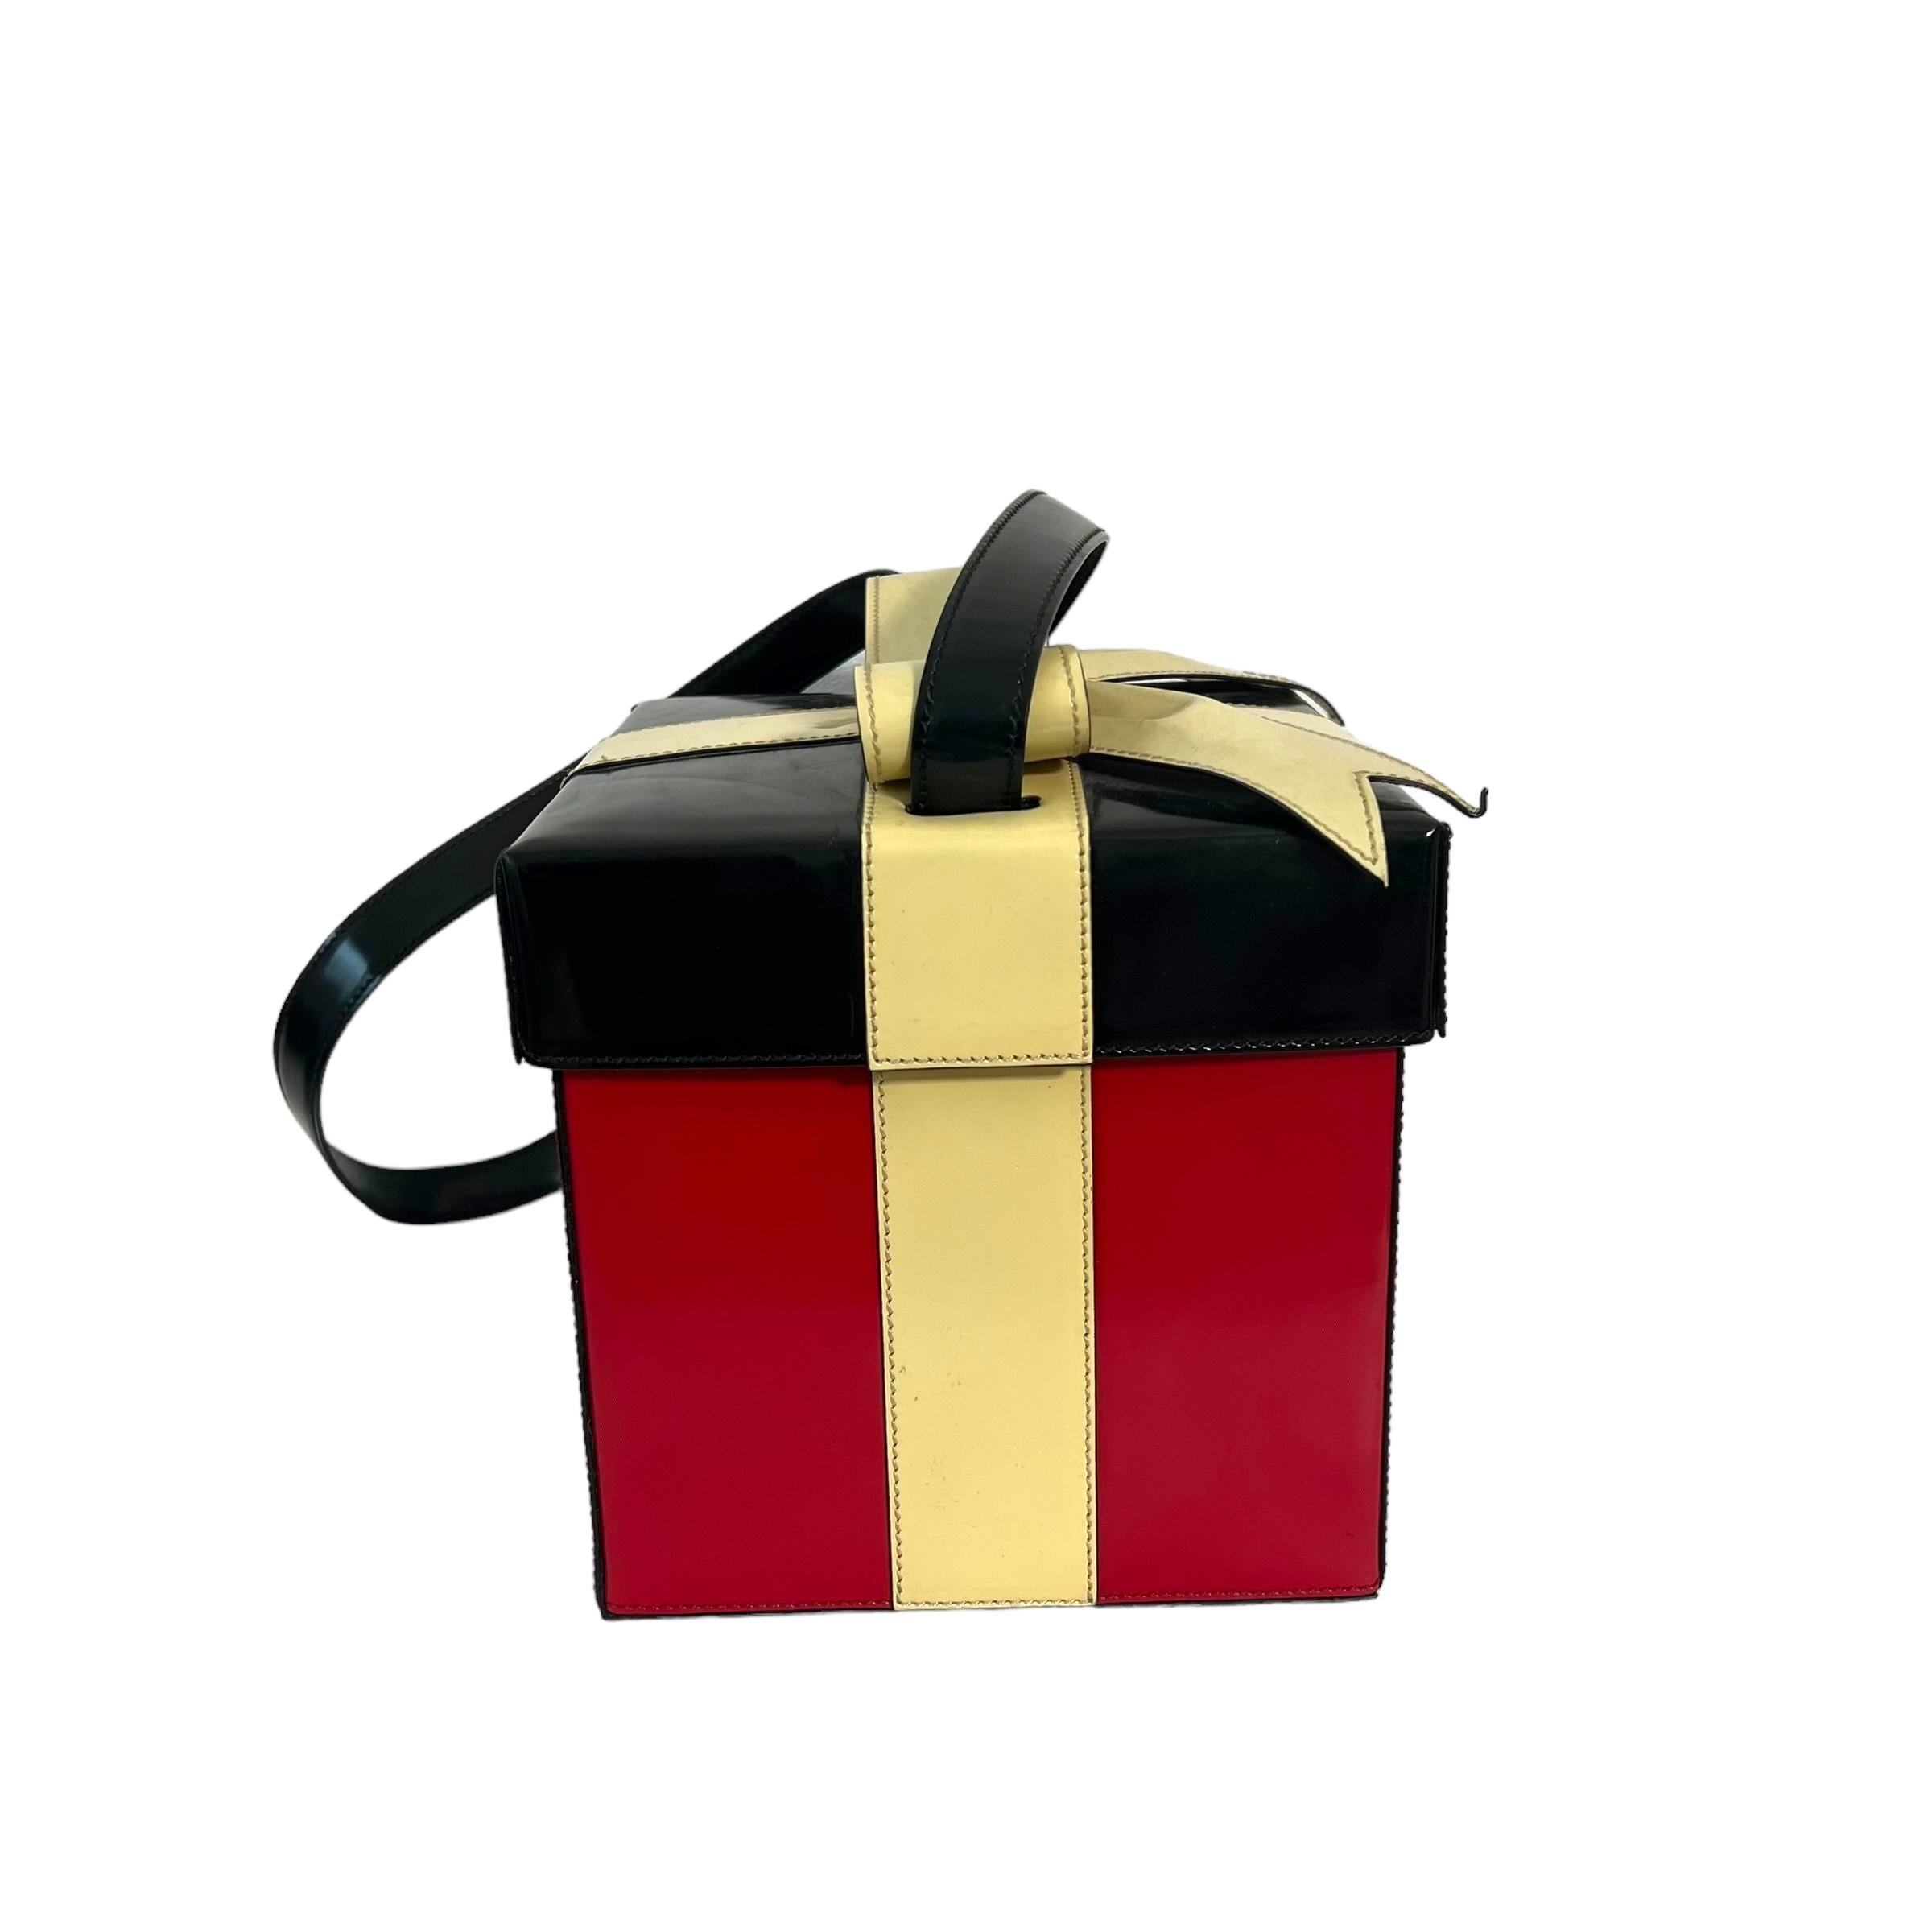 
Ce sac à main Moschino est une pièce vintage rare, parfaite pour les fêtes ! Fabriqué en Italie, les couleurs noir et rouge, avec un magnifique ruban, lui donnent l'allure d'un cadeau. En tant que pièce de collection des années 90, son état